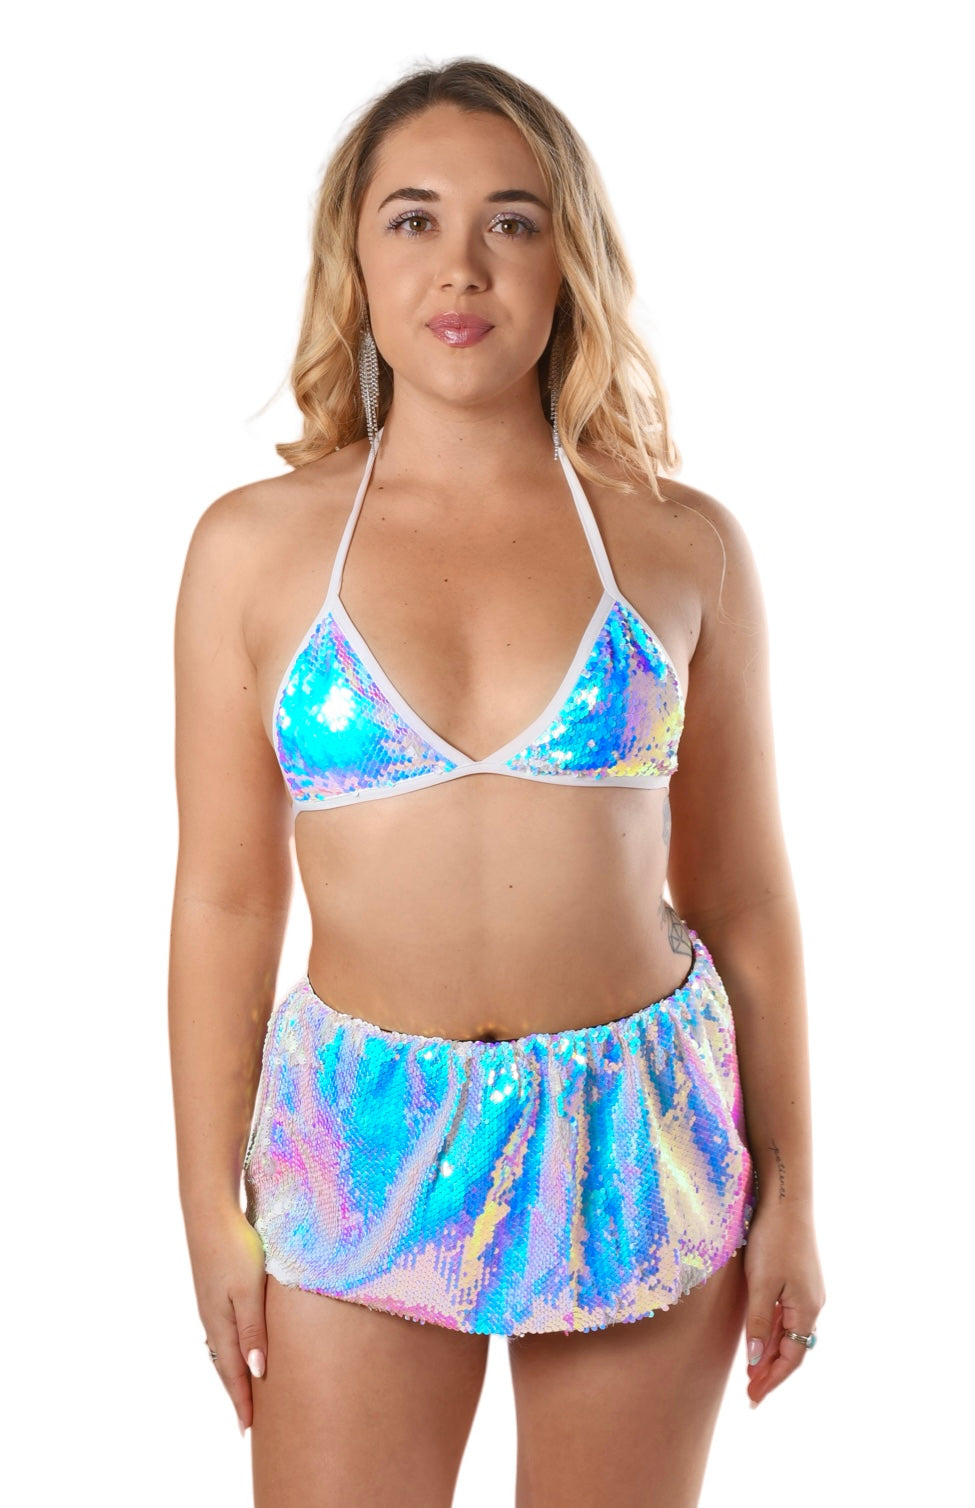 Cosmic Girl Sequin Set (Bra + Skirt)